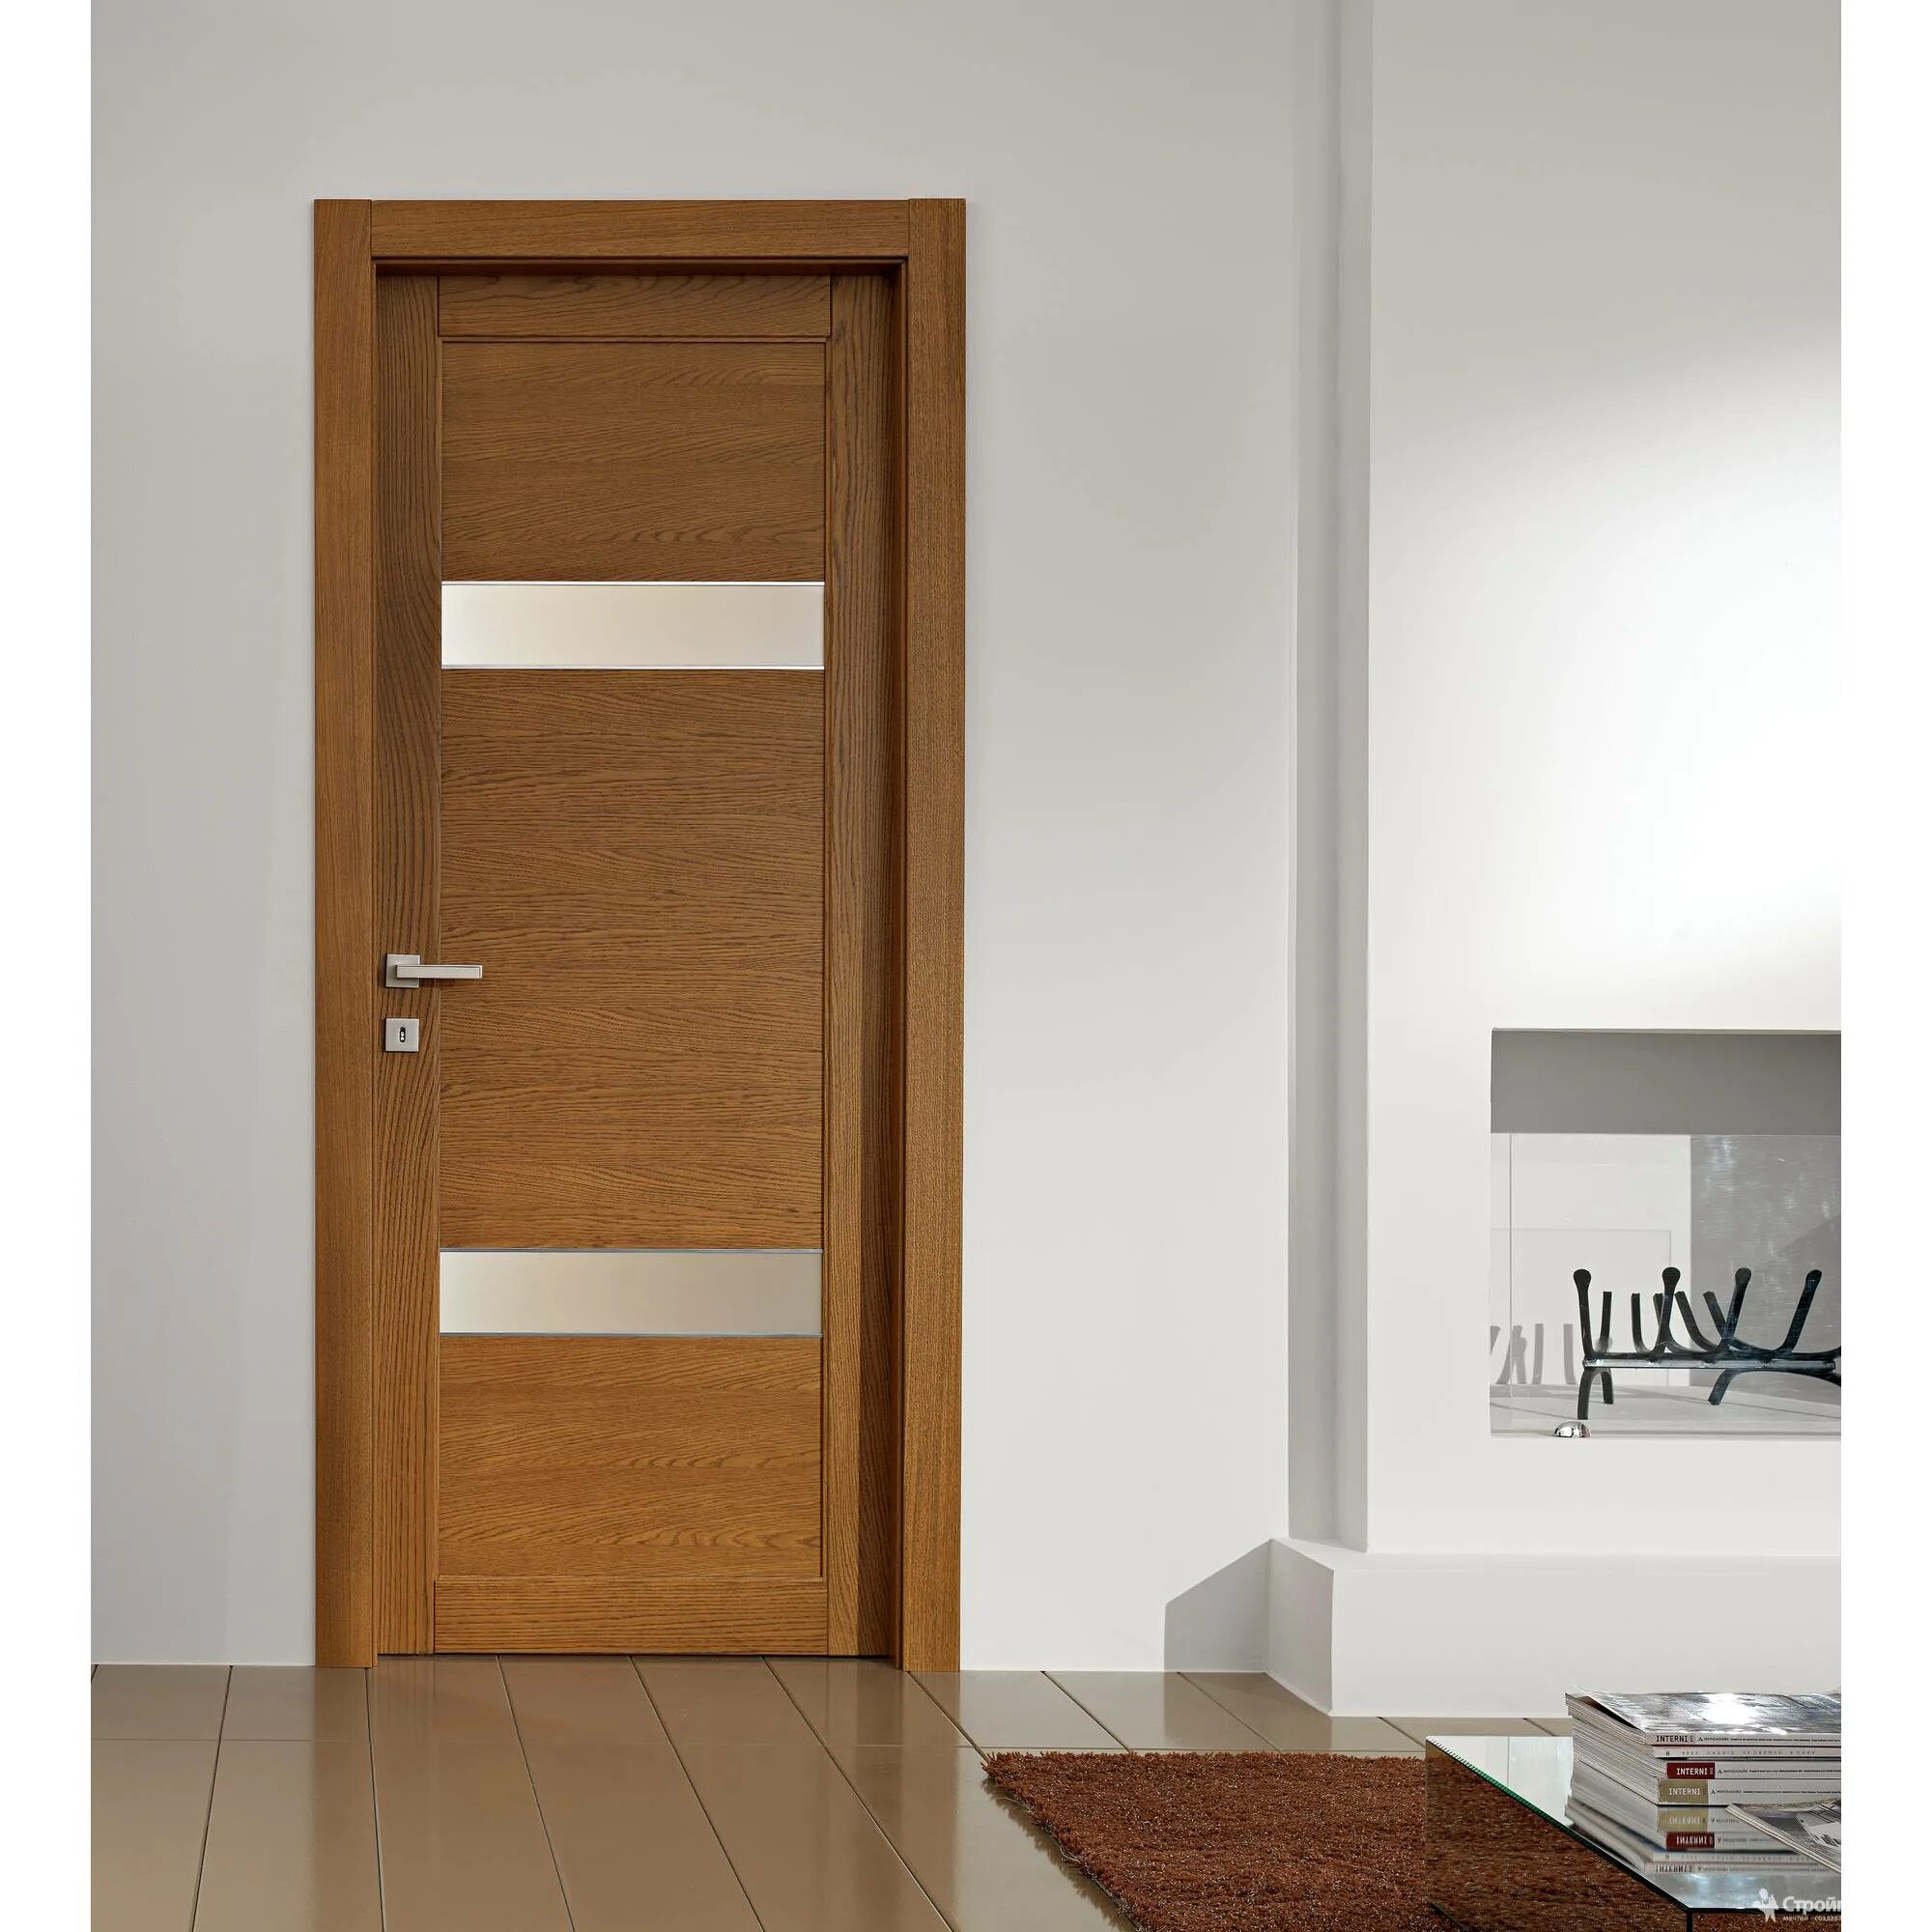 Двери интериор Дорс. Двери Modern Doors Design. Современные деревянные двери межкомнатные. Двери в современном интерьере.